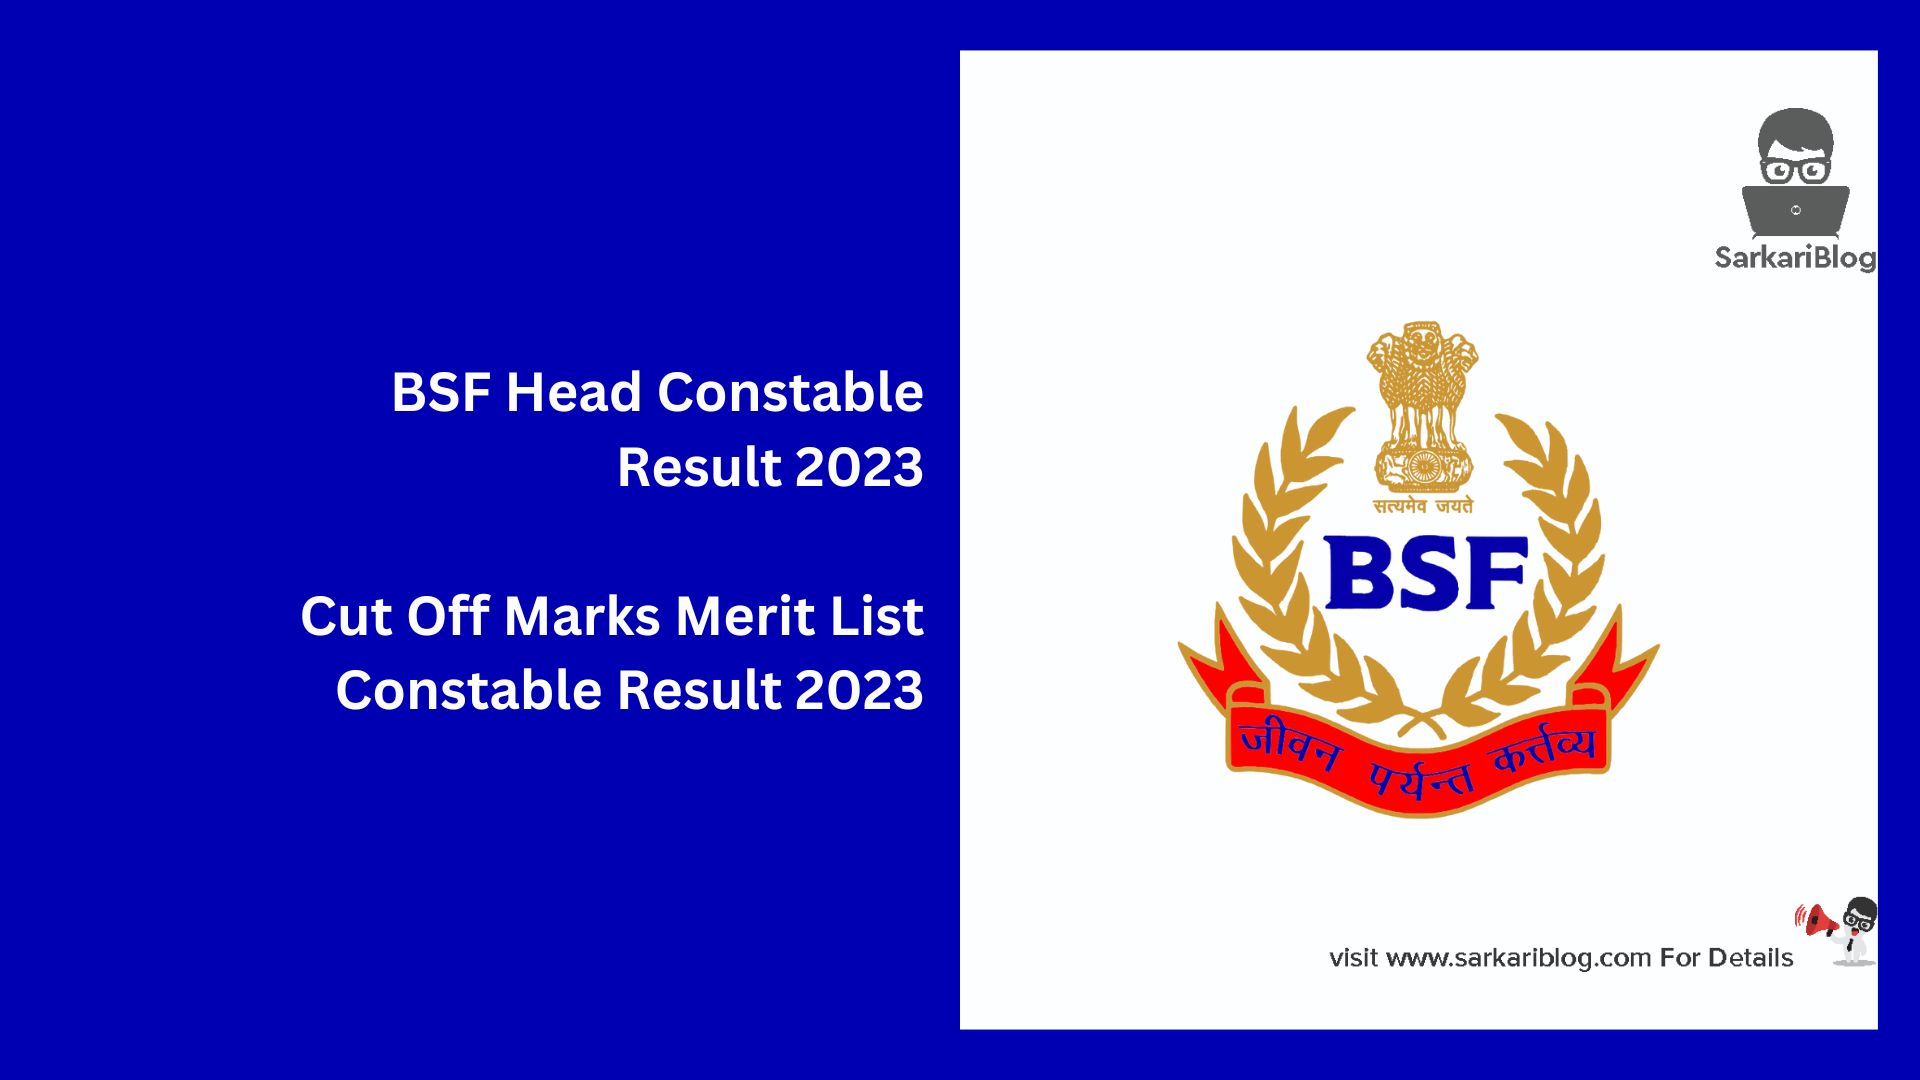 BSF Head Constable Result 2023